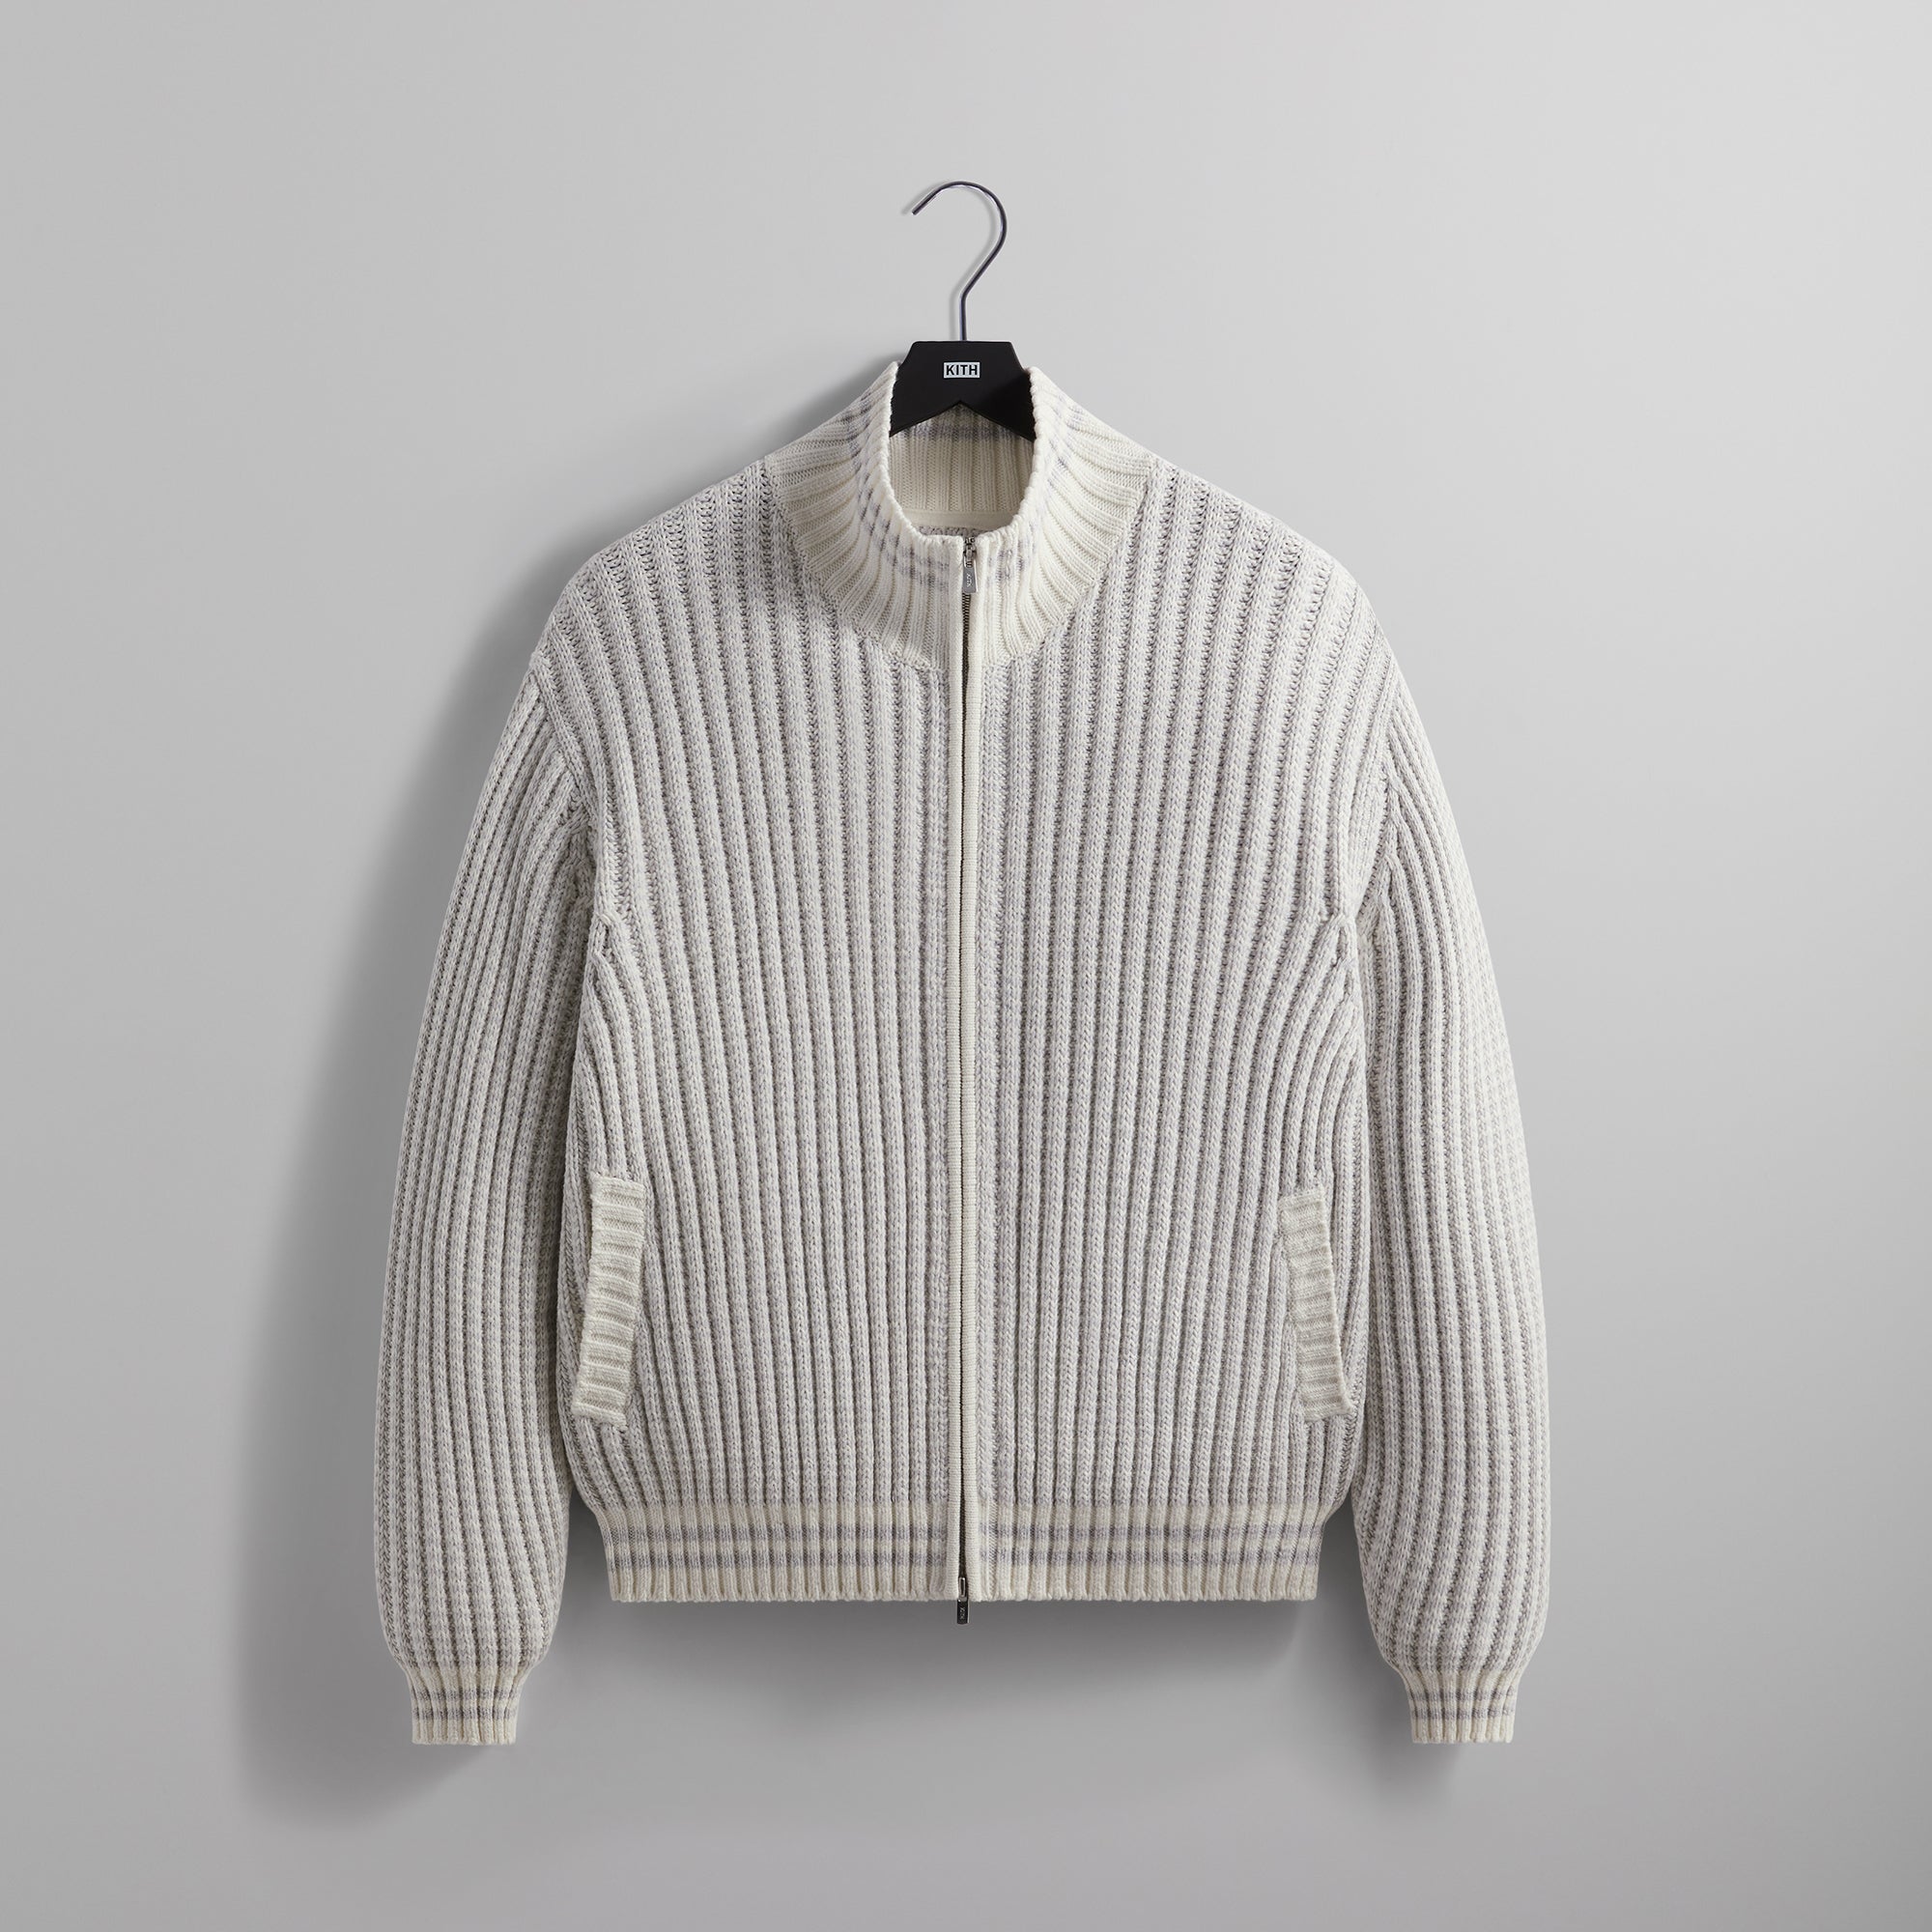 Kith Wyona Open Knit Full Zip Sweater - Light Heather Grey – Kith 